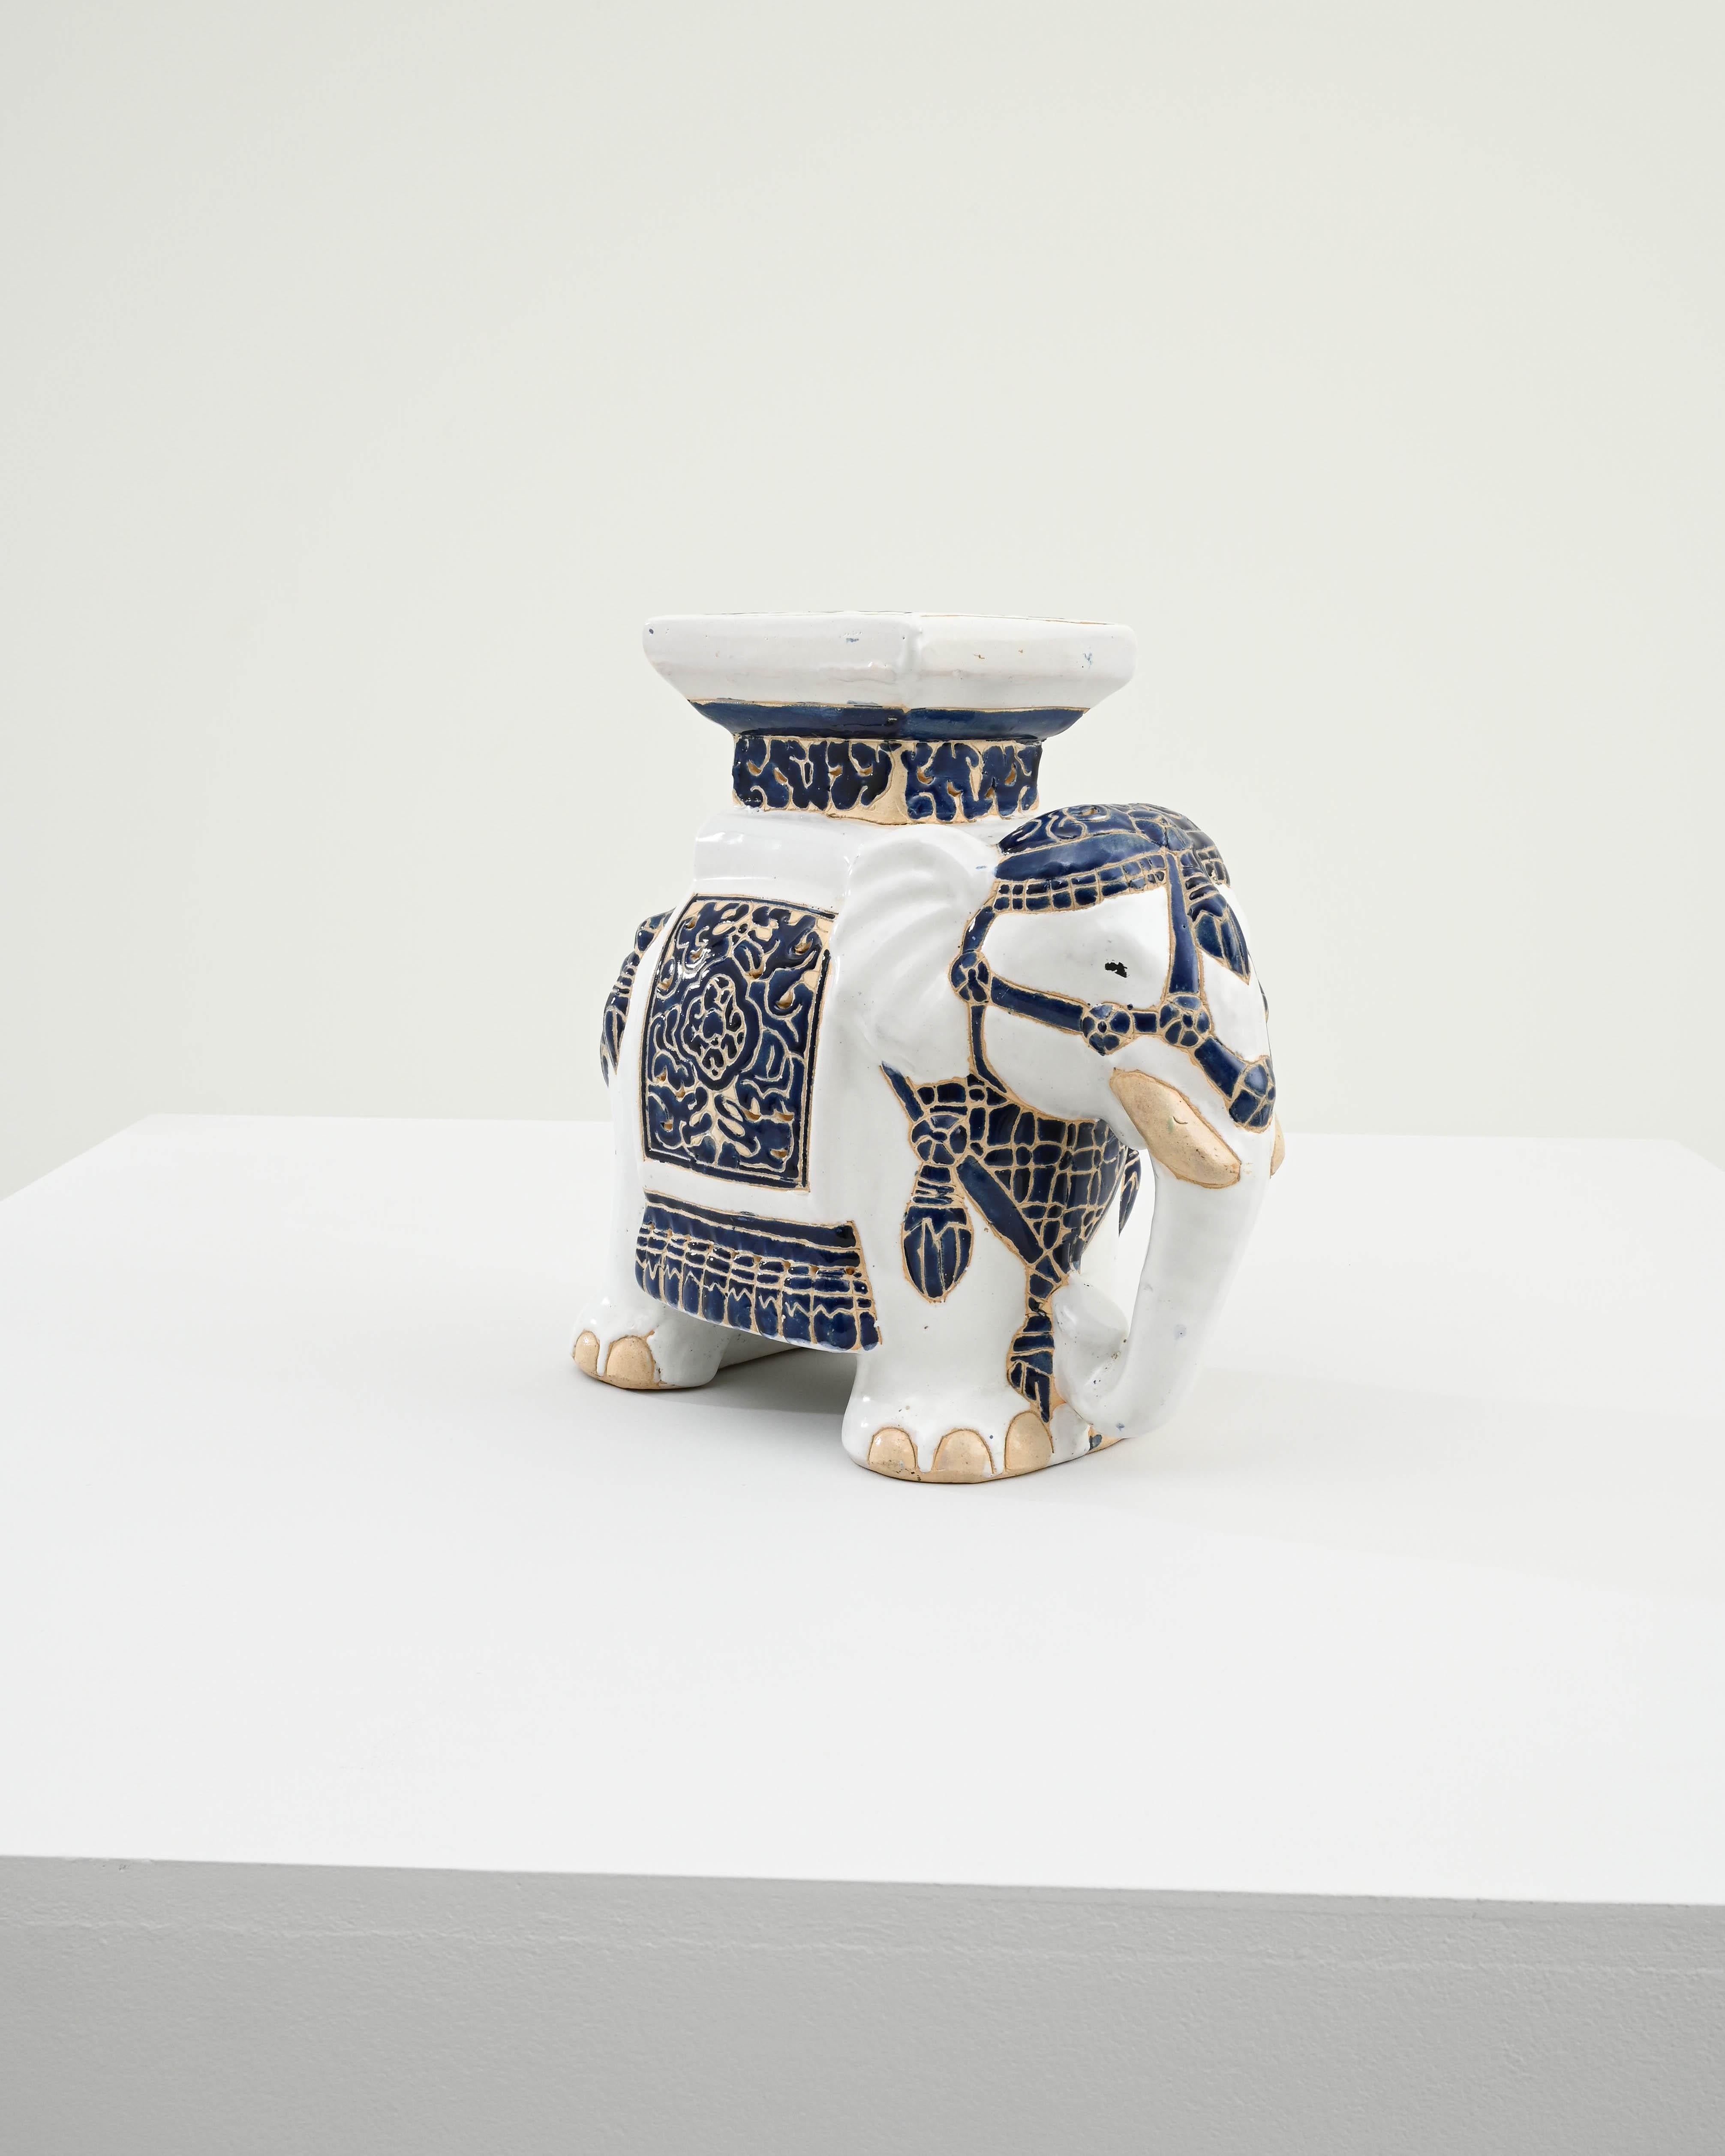 Décoration en céramique des années 1960 en France en forme d'éléphant. Un siège de selle et une couverture sont émaillés de bleu indigo, la peau de l'éléphant est peinte en blanc brillant et lacée de lignes du corps en argile de couleur terre ;